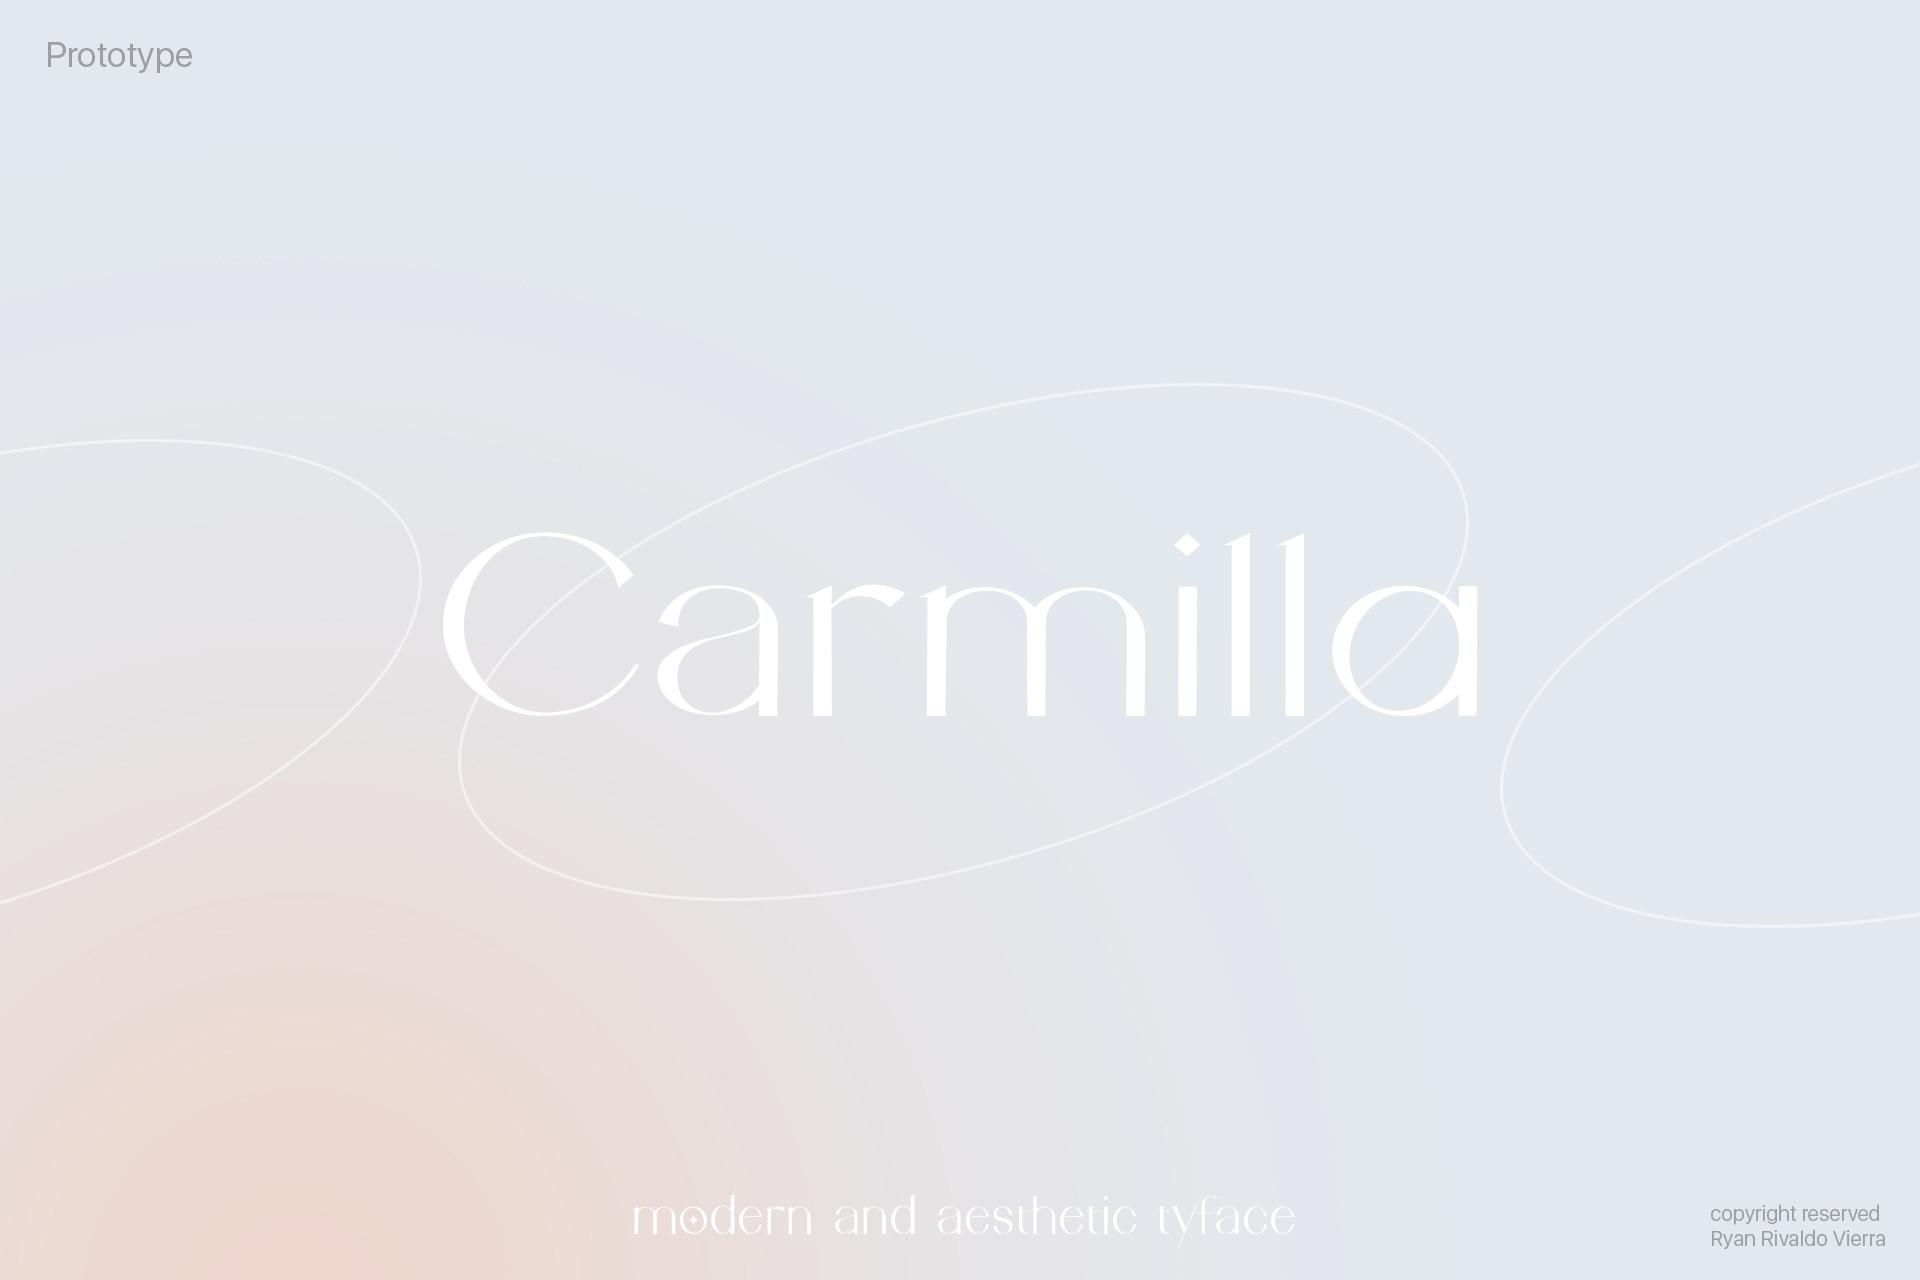 Carmilla Font